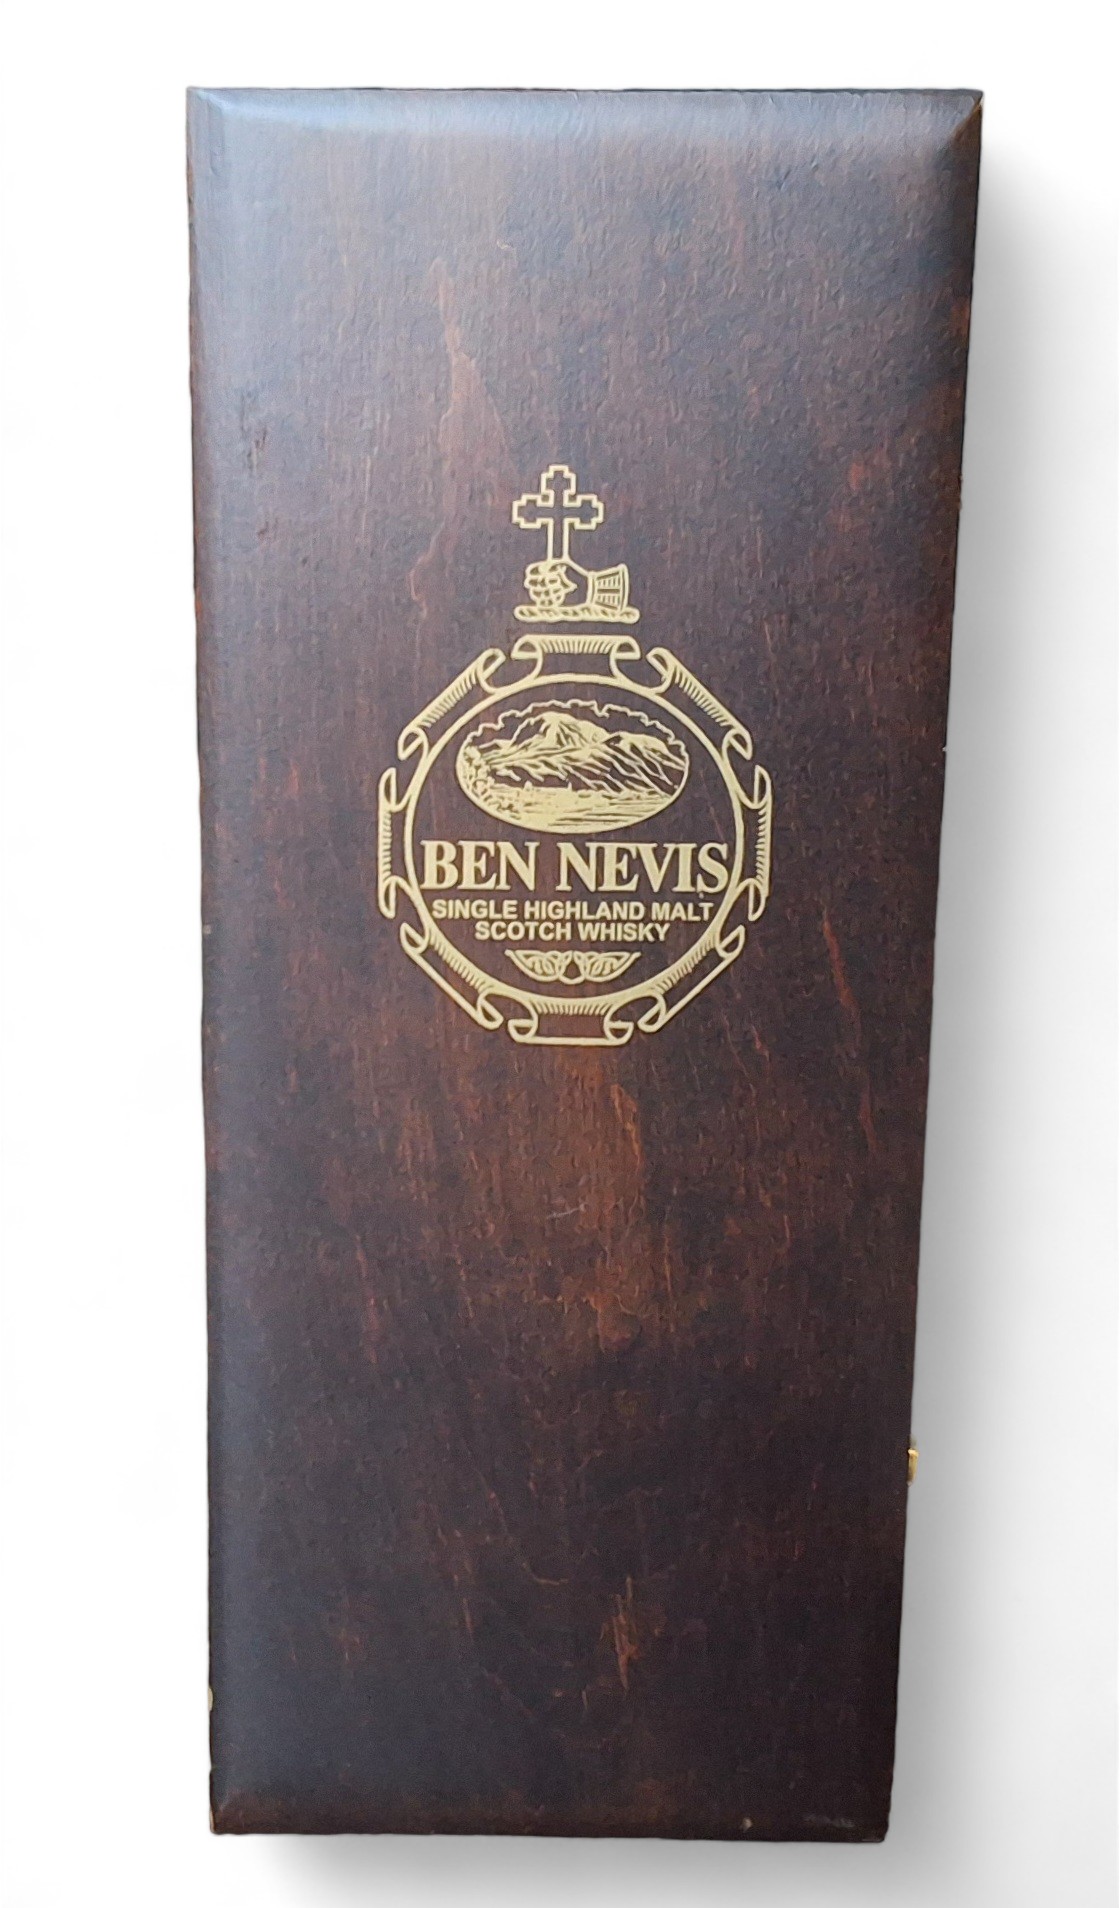 Ben Nevis Single Highland Malt Scotch Whisky, cask no 98/35/13, distilled December 1984, vatted in - Bild 2 aus 2